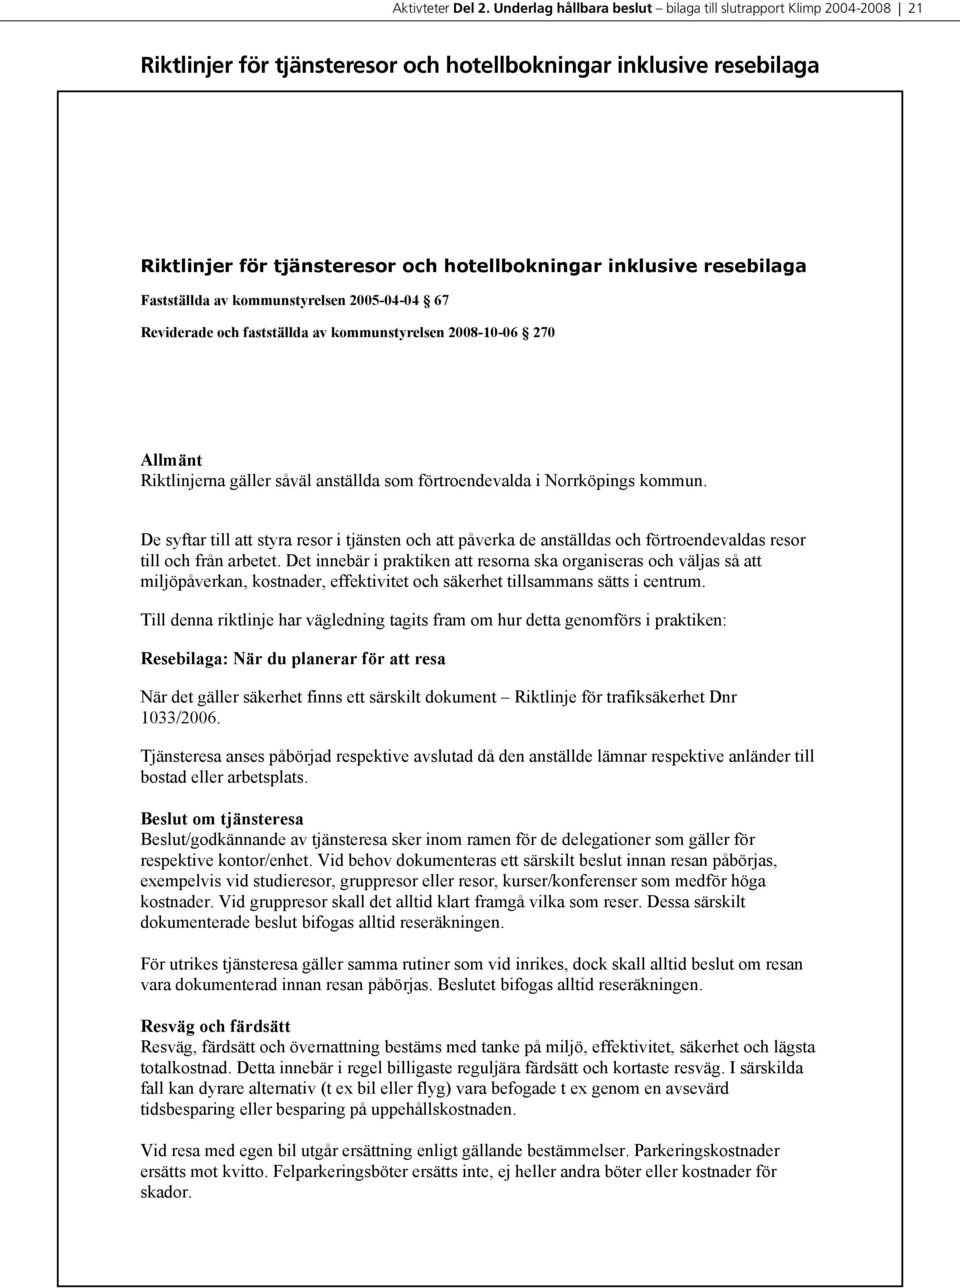 resebilaga Fastställda av kommunstyrelsen 2005-04-04 67 Reviderade och fastställda av kommunstyrelsen 2008-10-06 270 Allmänt Riktlinjerna gäller såväl anställda som förtroendevalda i Norrköpings